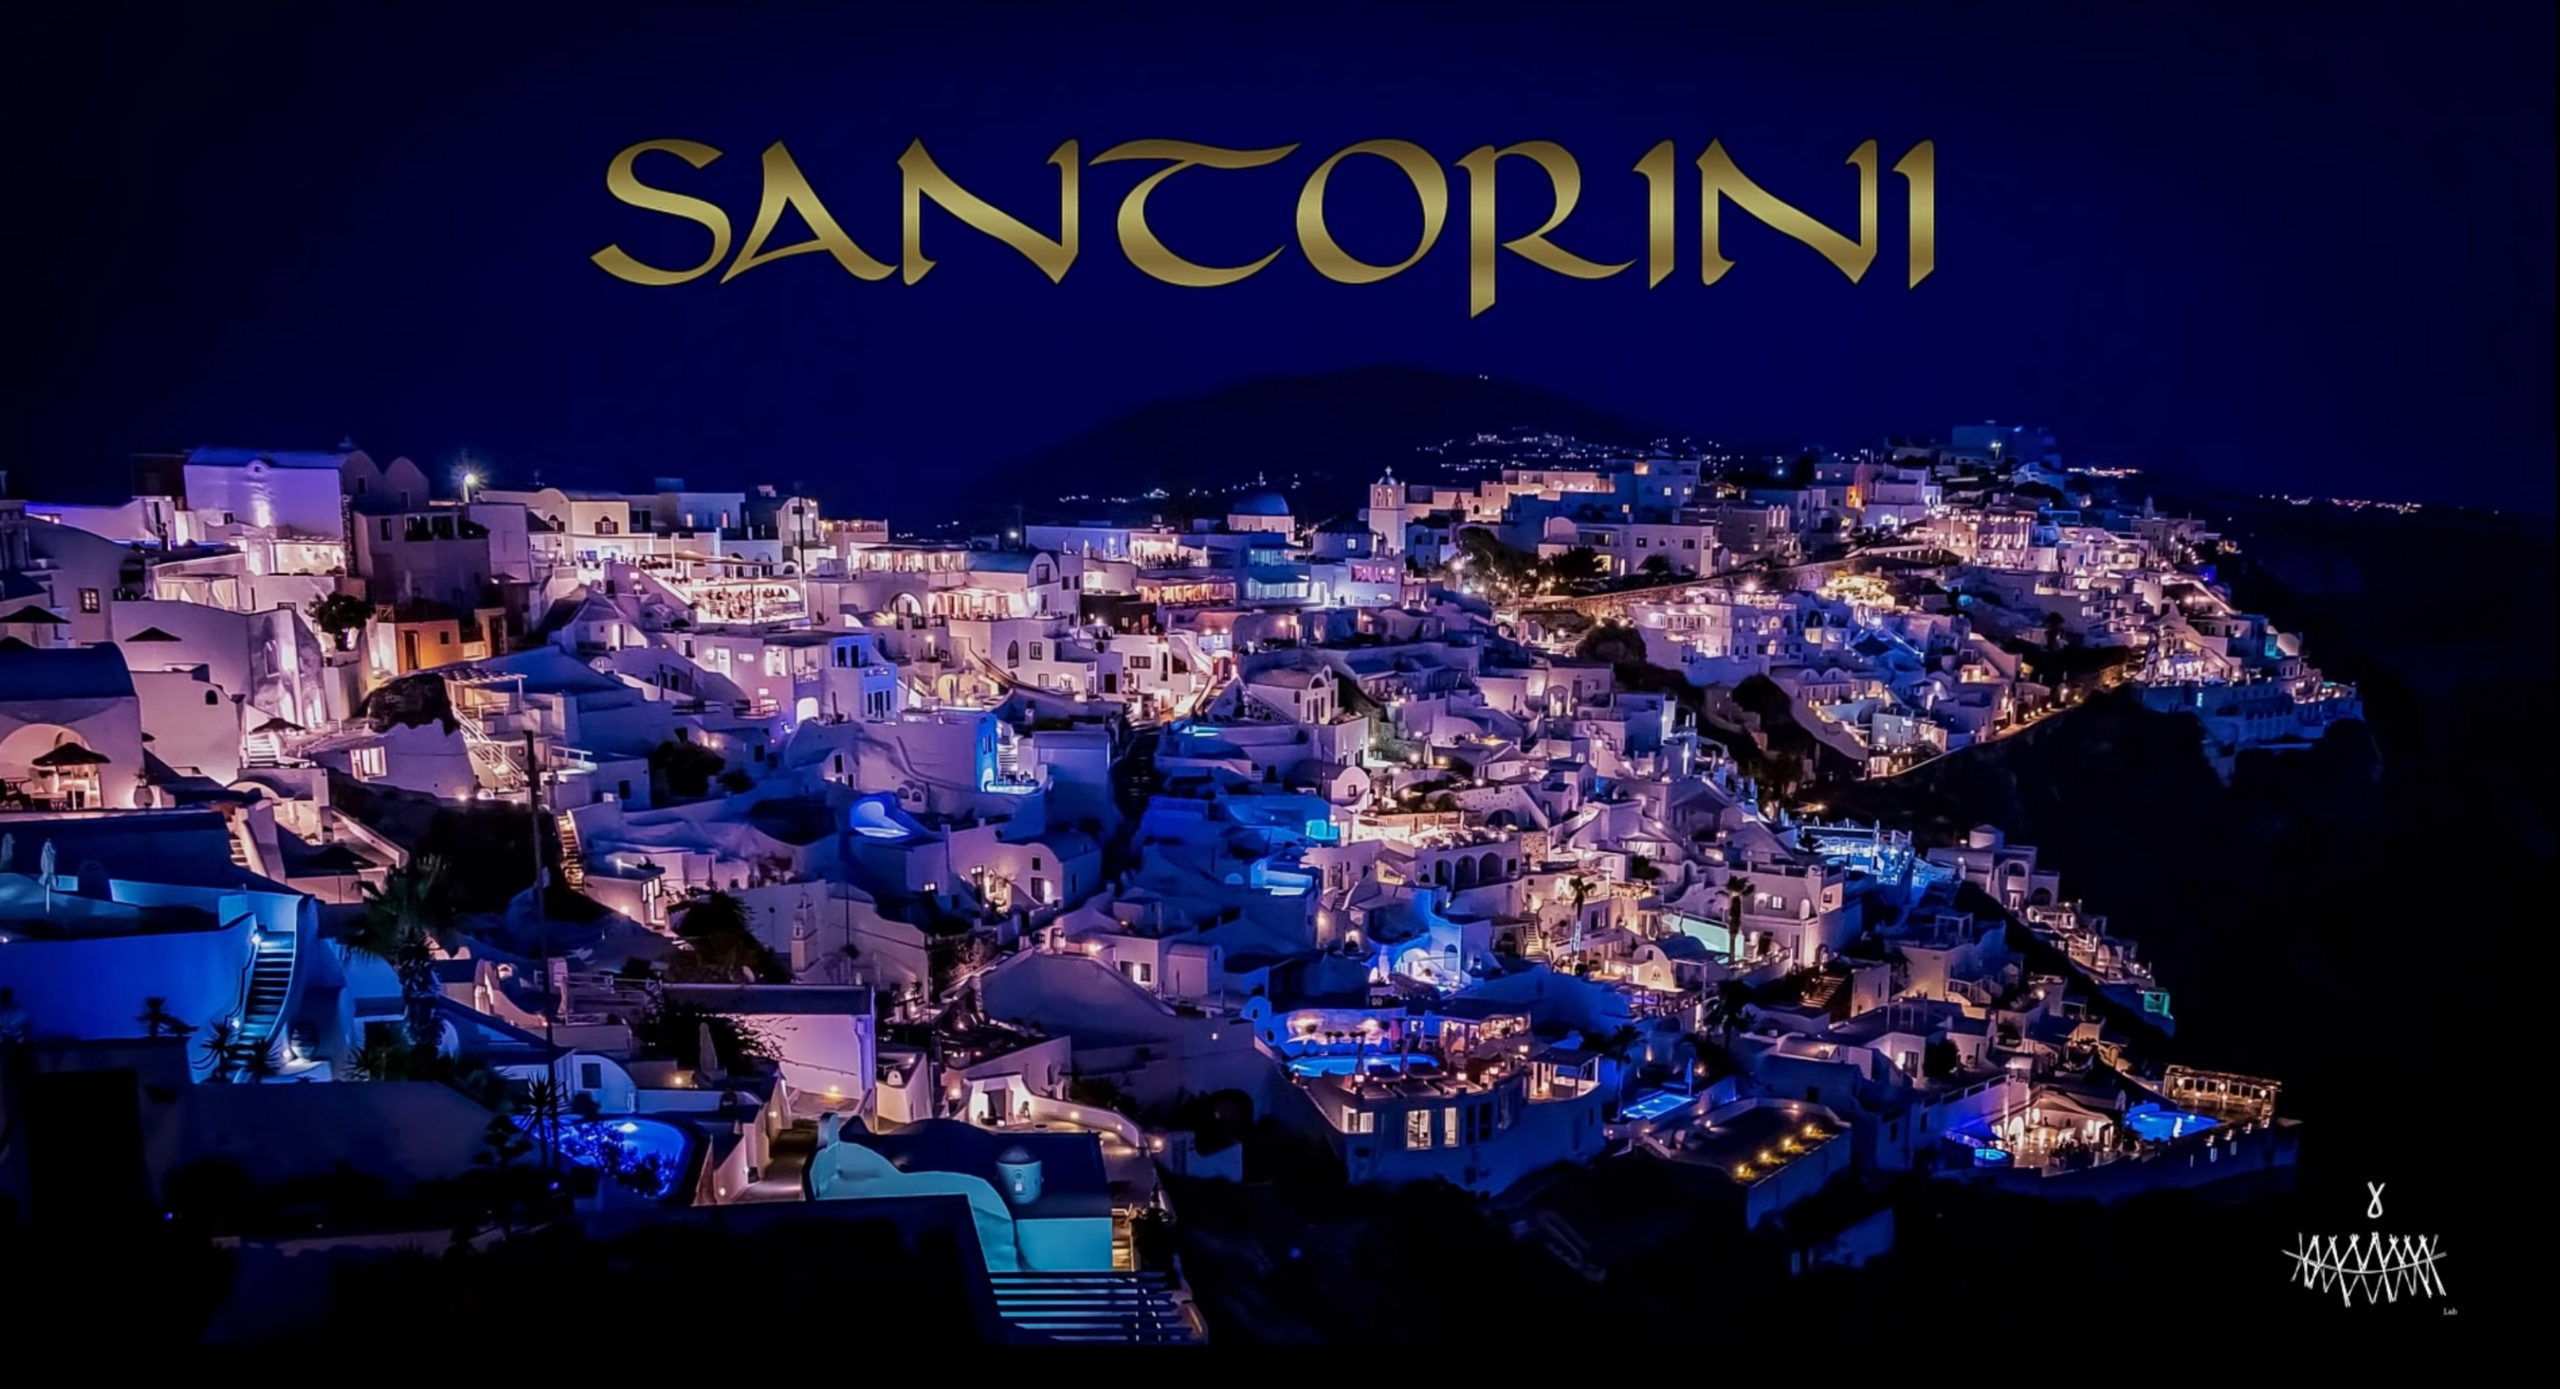 Santorini (Audio)